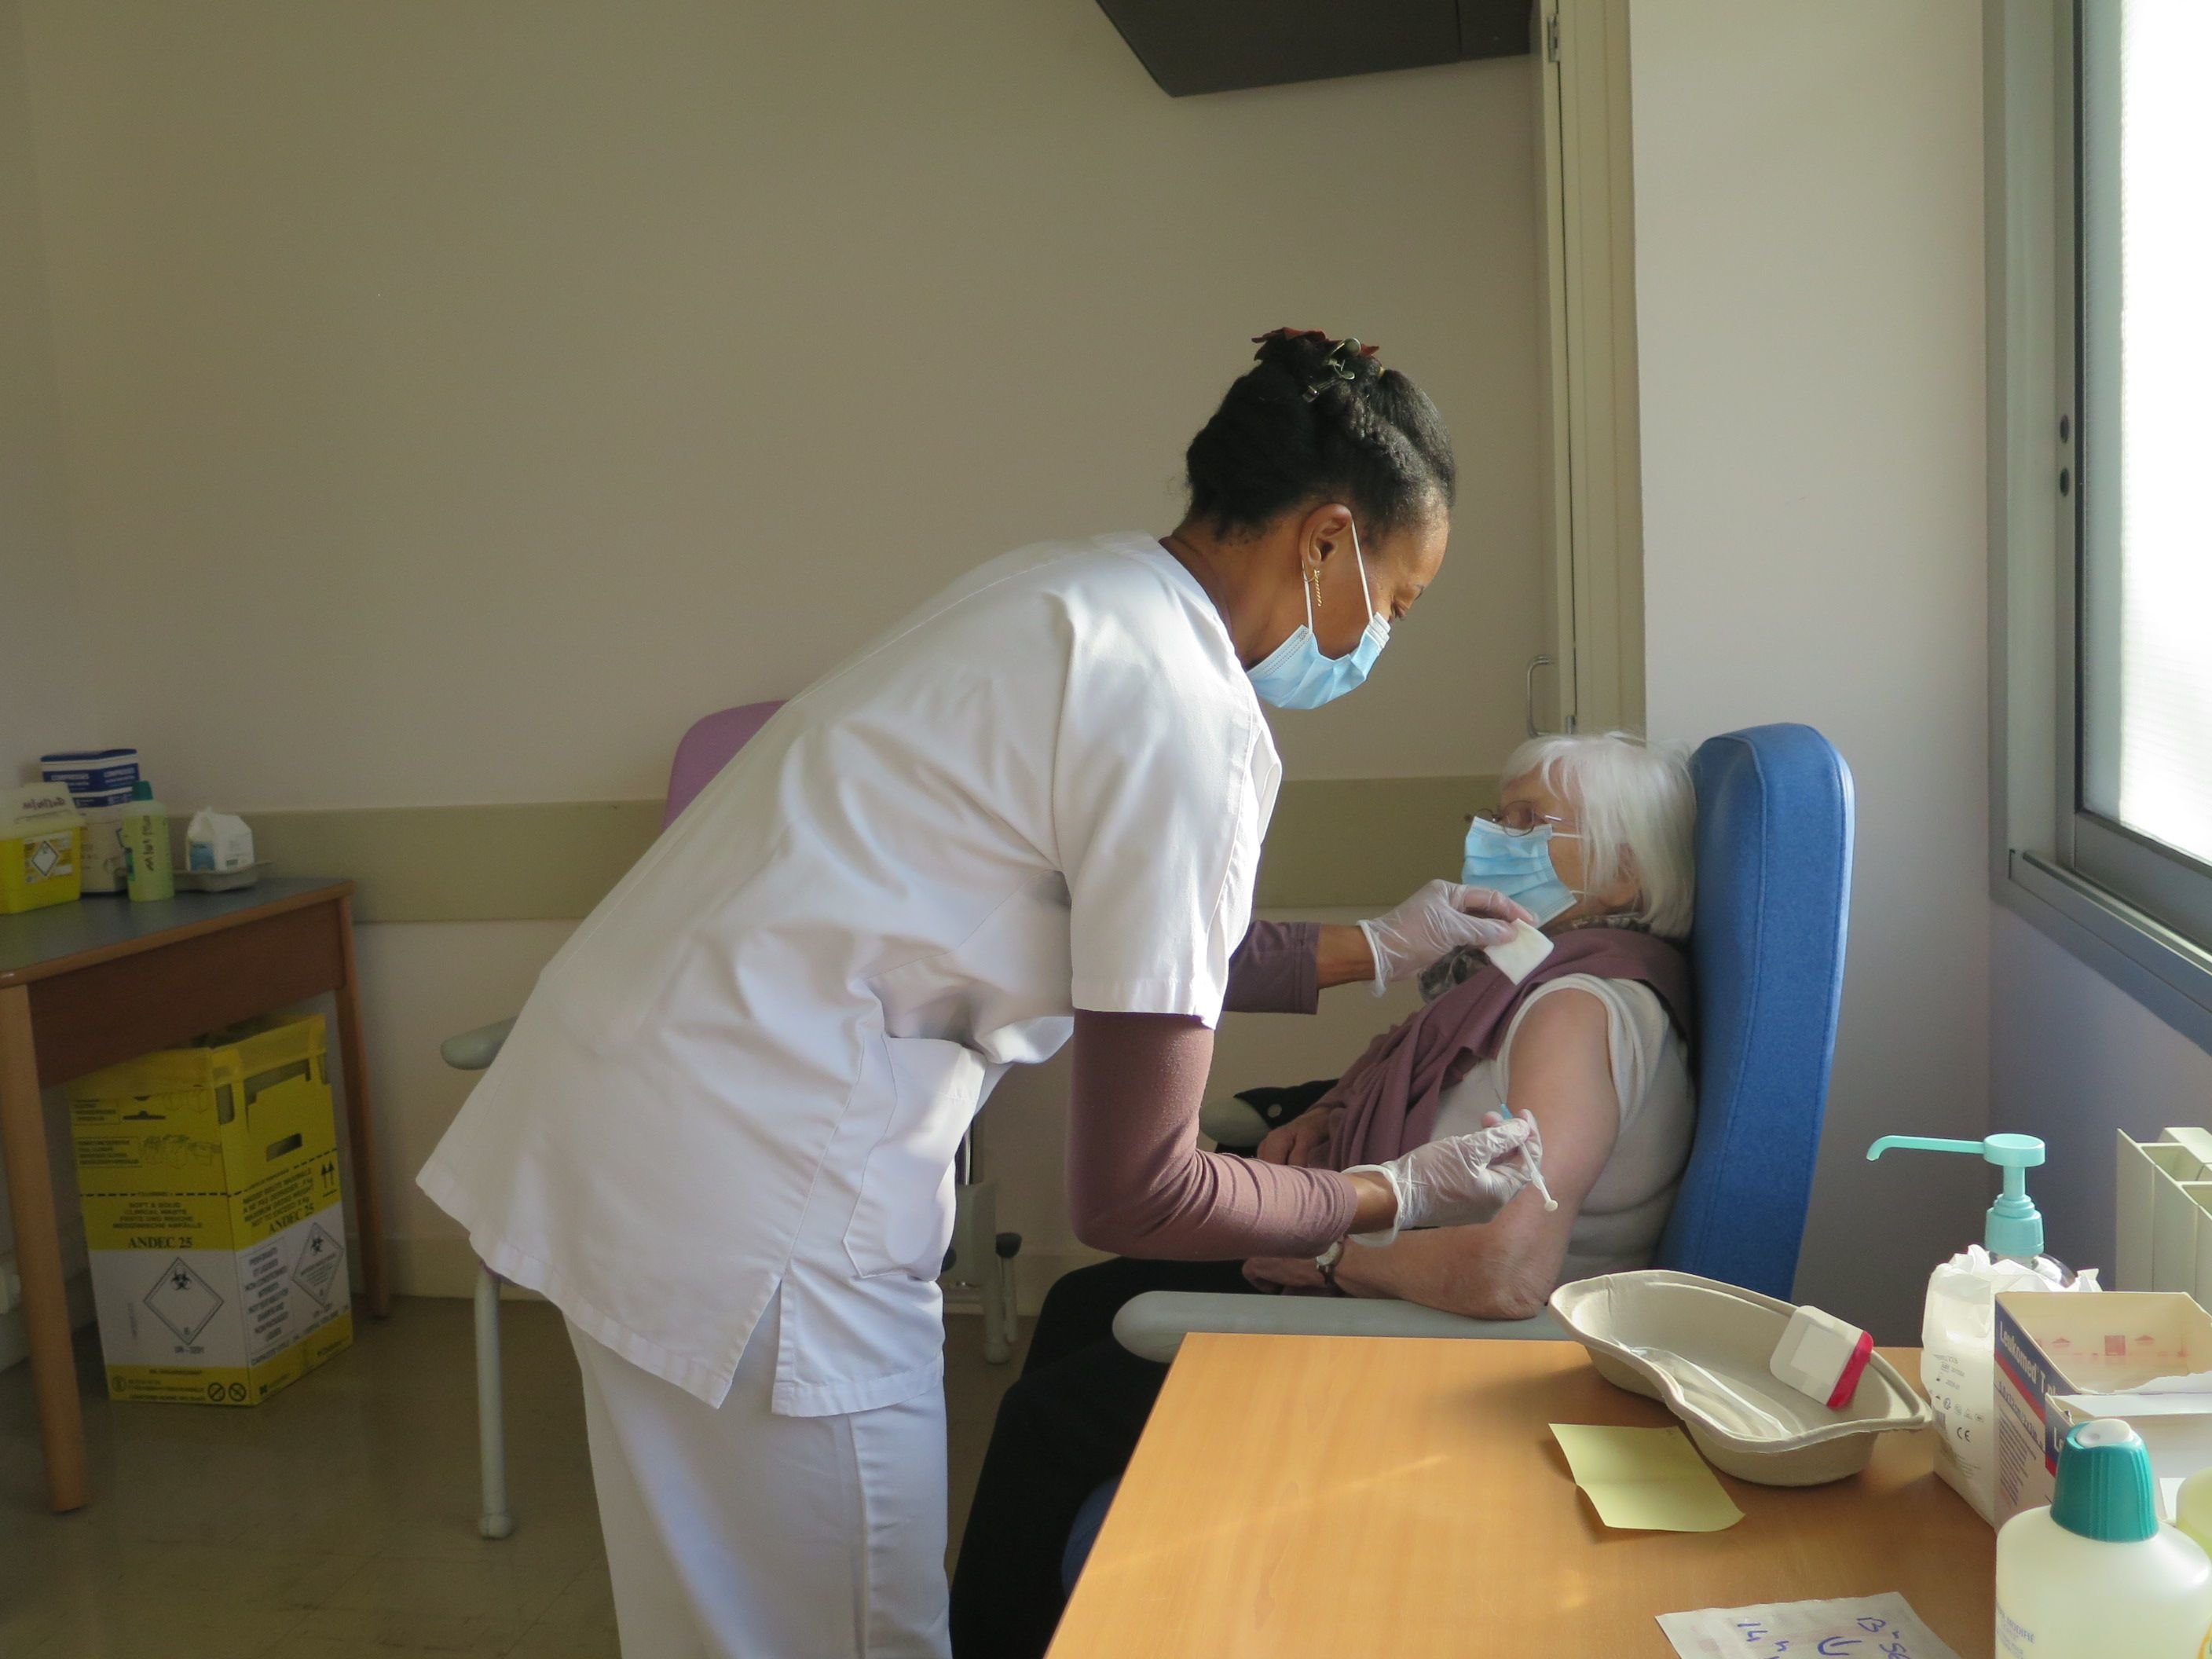 Un centre de vaccination accueille soignants et personnes âgées au sein de l'hôpital de Beaumont-sur-Oise.